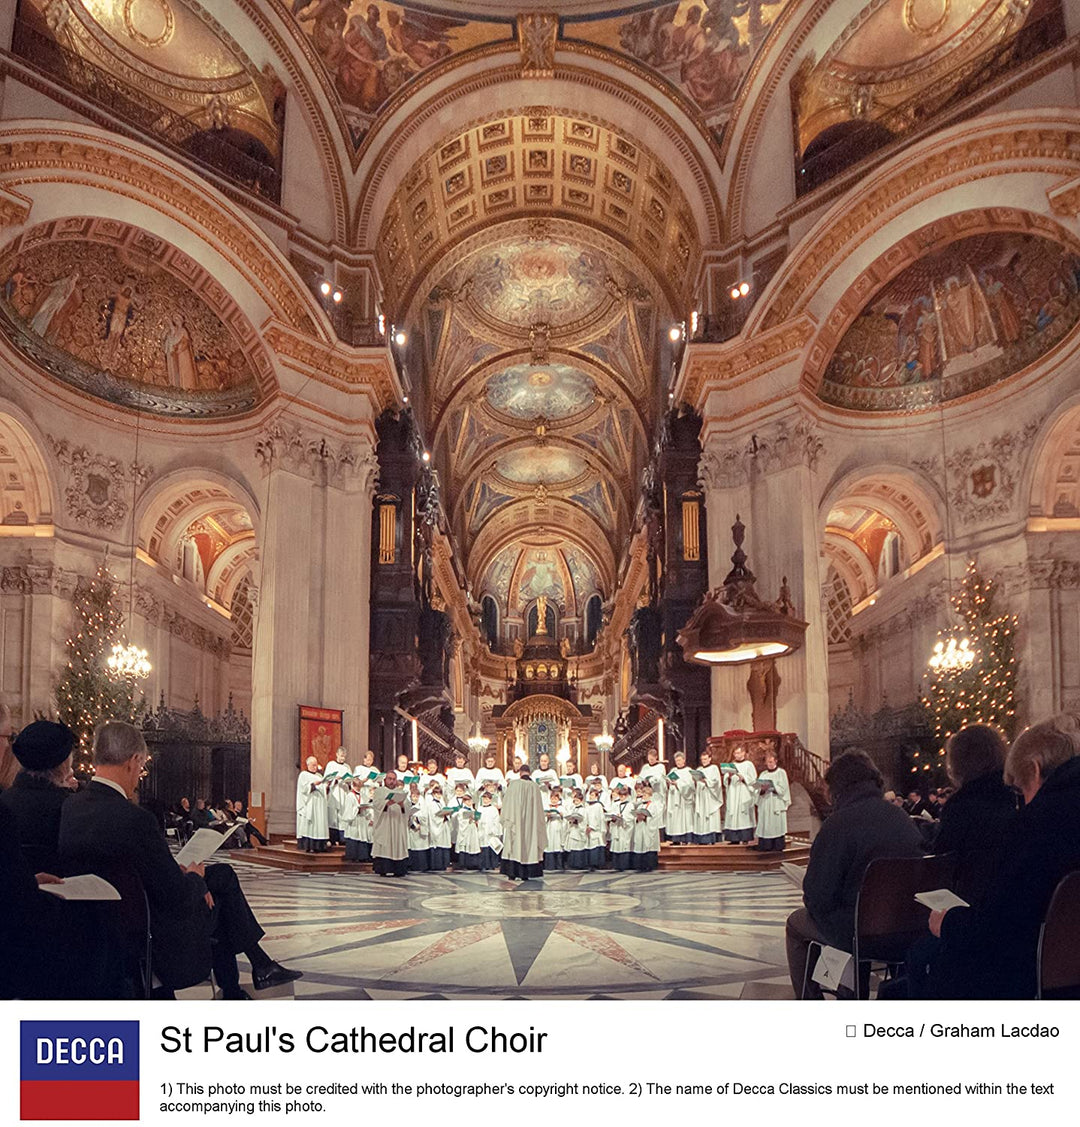 Coro della Cattedrale di St. Paul Andrew Carwood - Canti con il Coro della Cattedrale di St. Paul